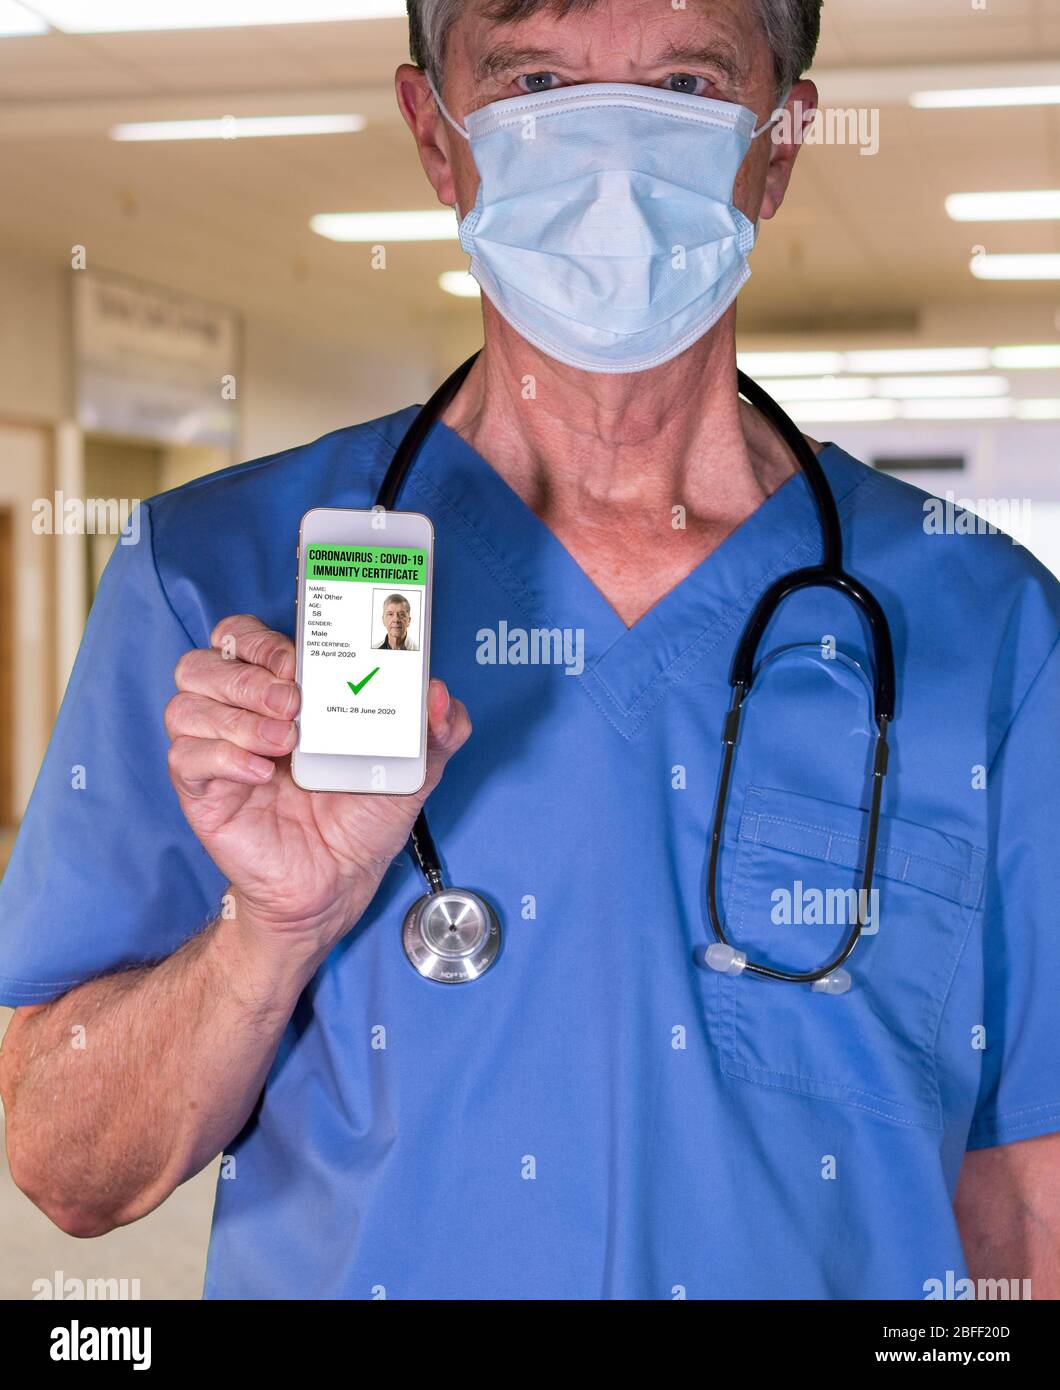 Männliche Arzt Konzept der Immunitätsprüfung und Zertifizierung auf Smartphone-App, um Menschen zu ermöglichen, nach negativen Test wieder an die Arbeit gehen Stockfoto